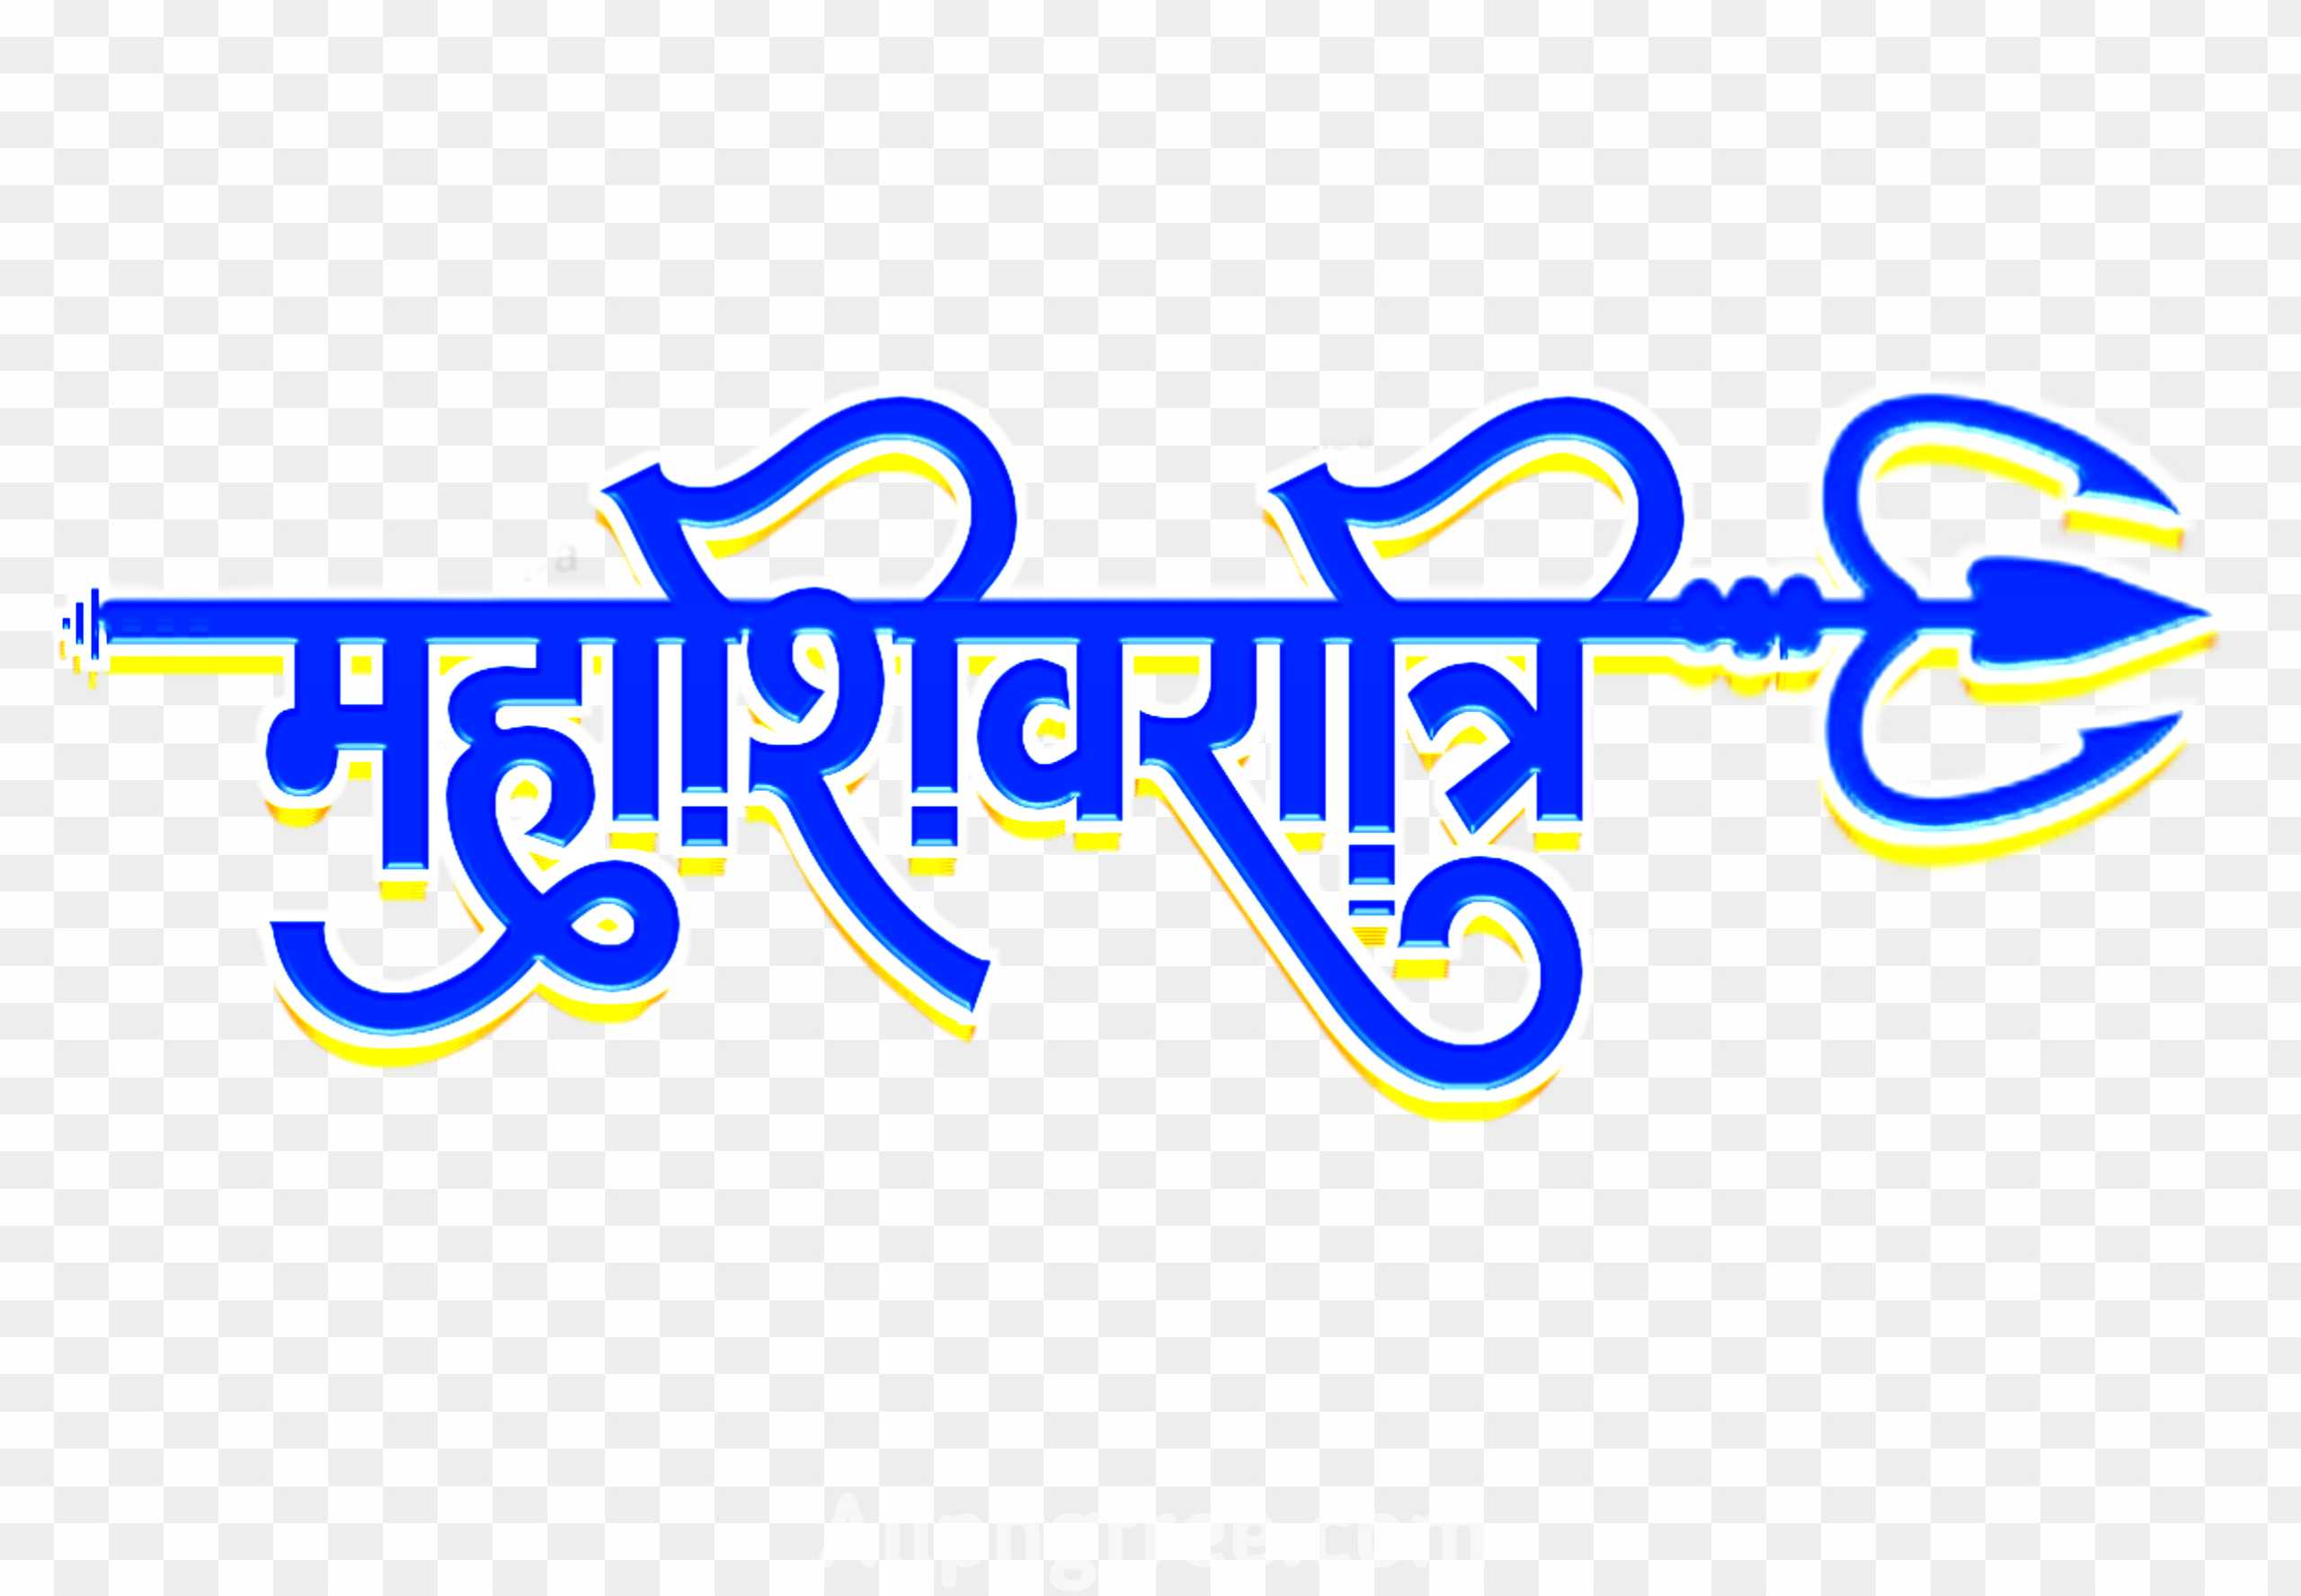 Mahashivratri banner editing png